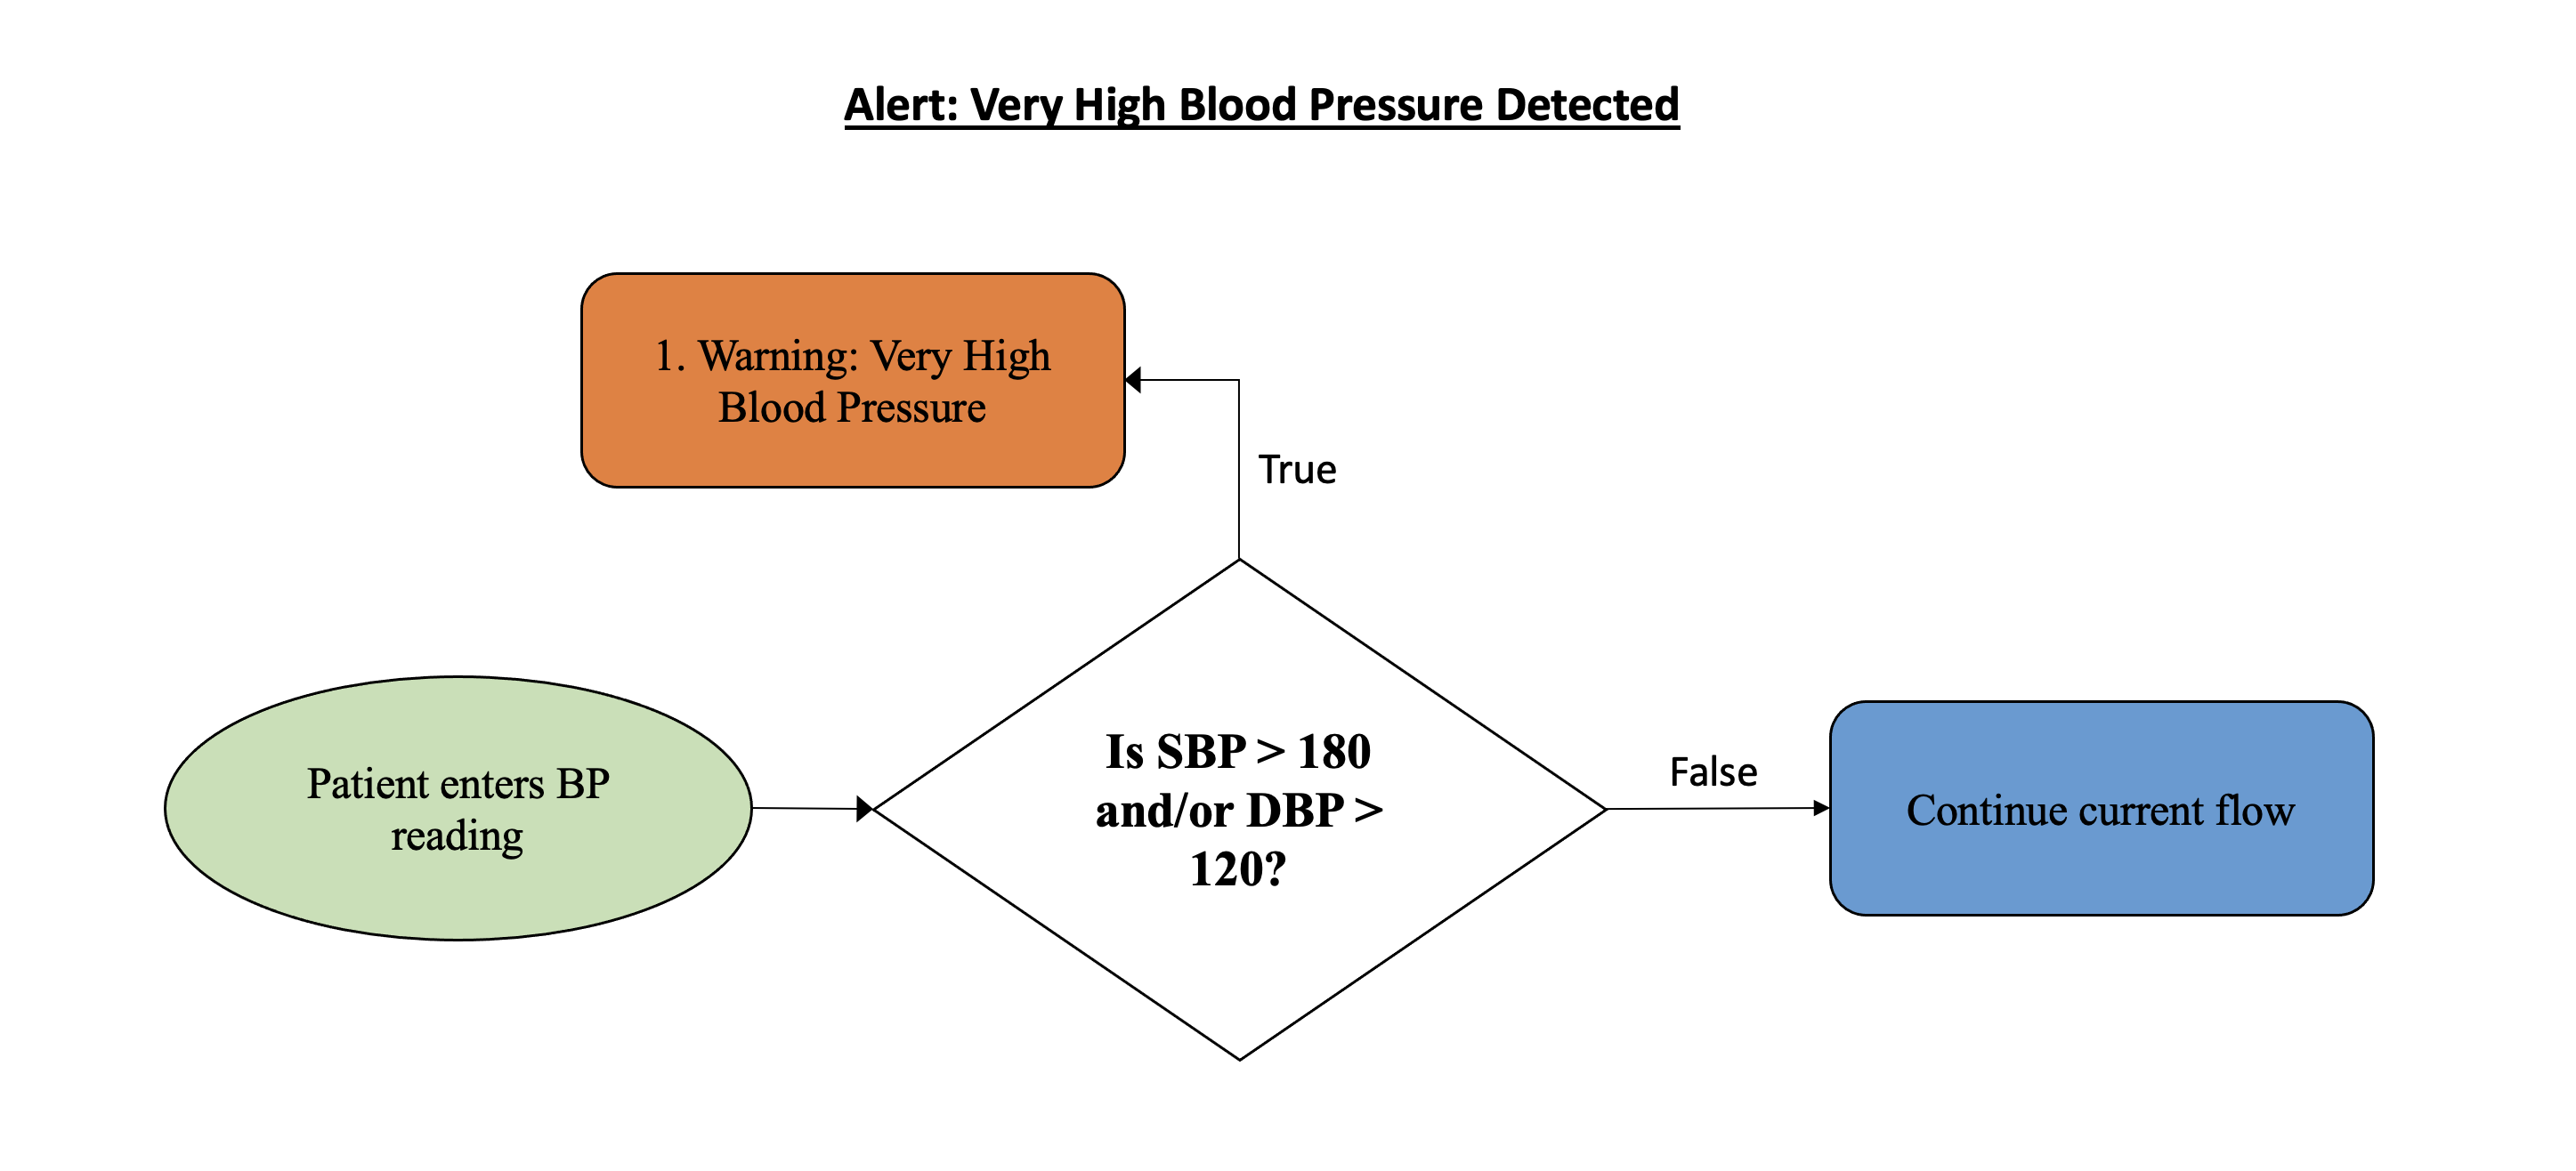 Very High Blood Pressure Warning Workflow diagram